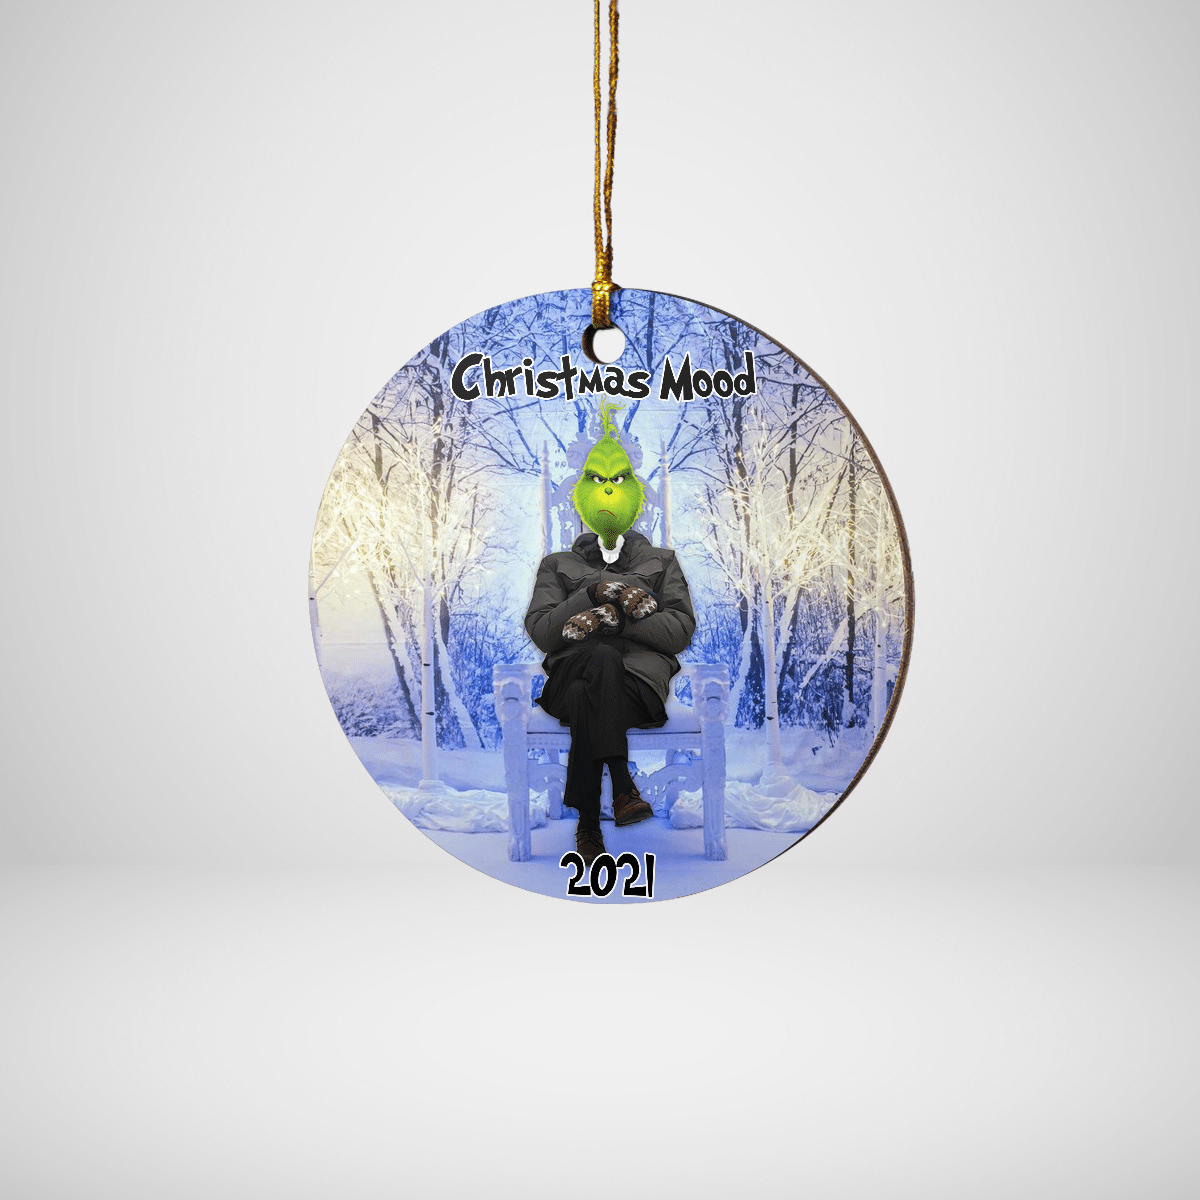 Christmas Mood 2021 Funny Ornament